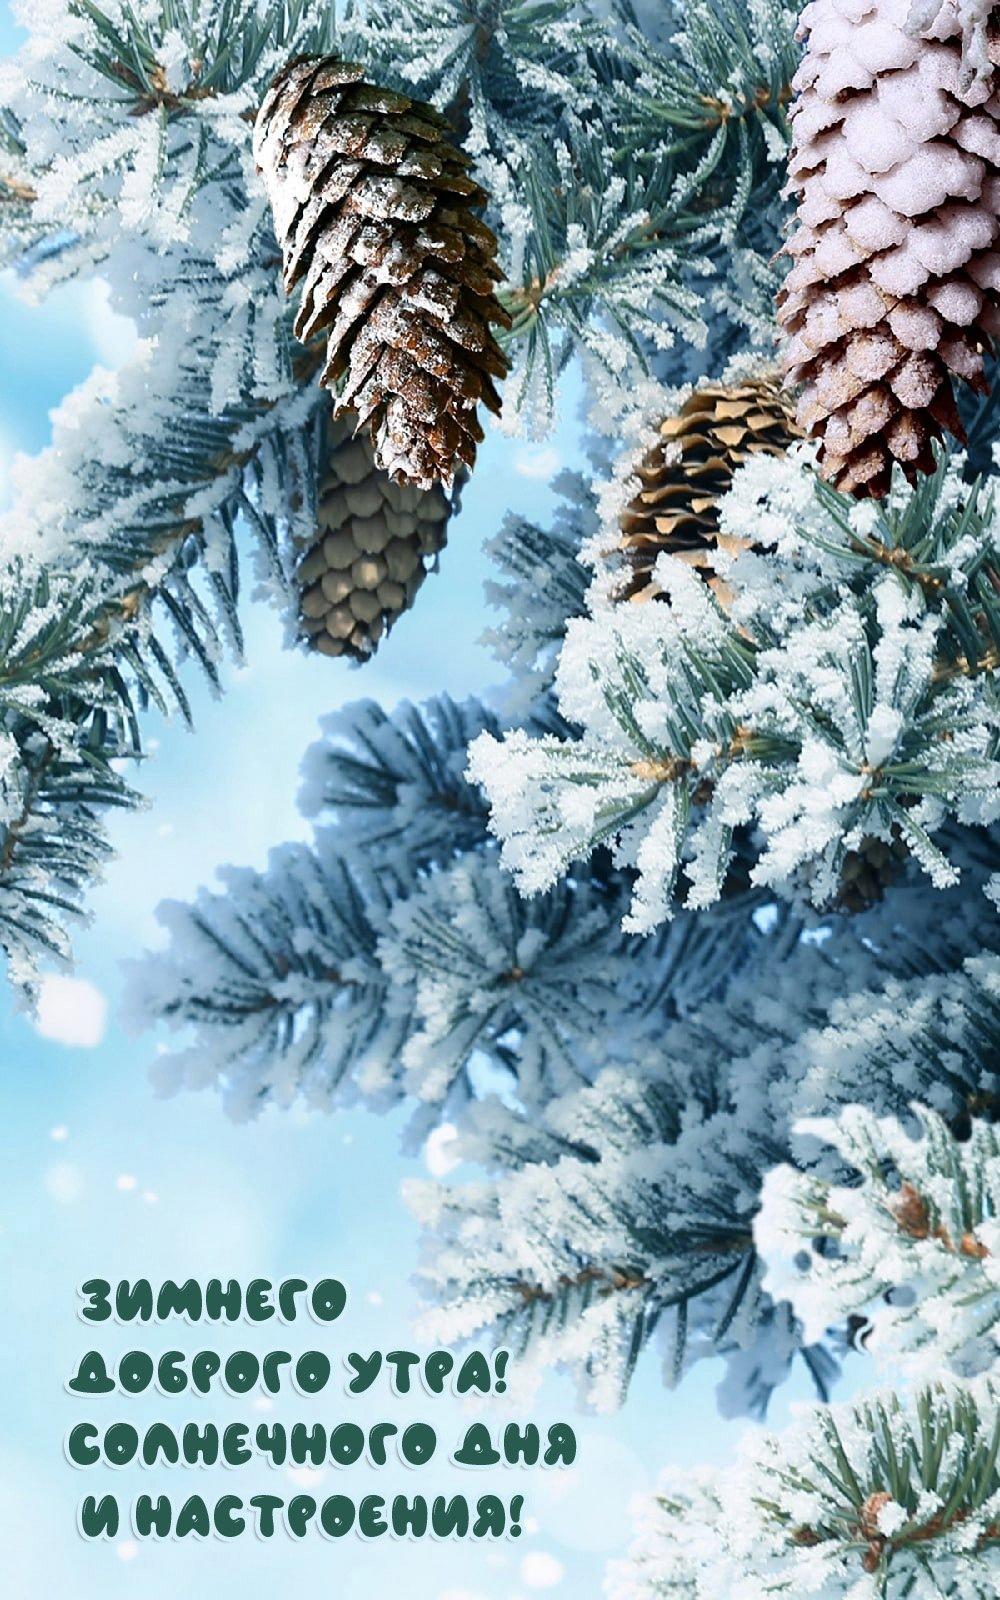 Зима пришла открытка - Праздники сегодня